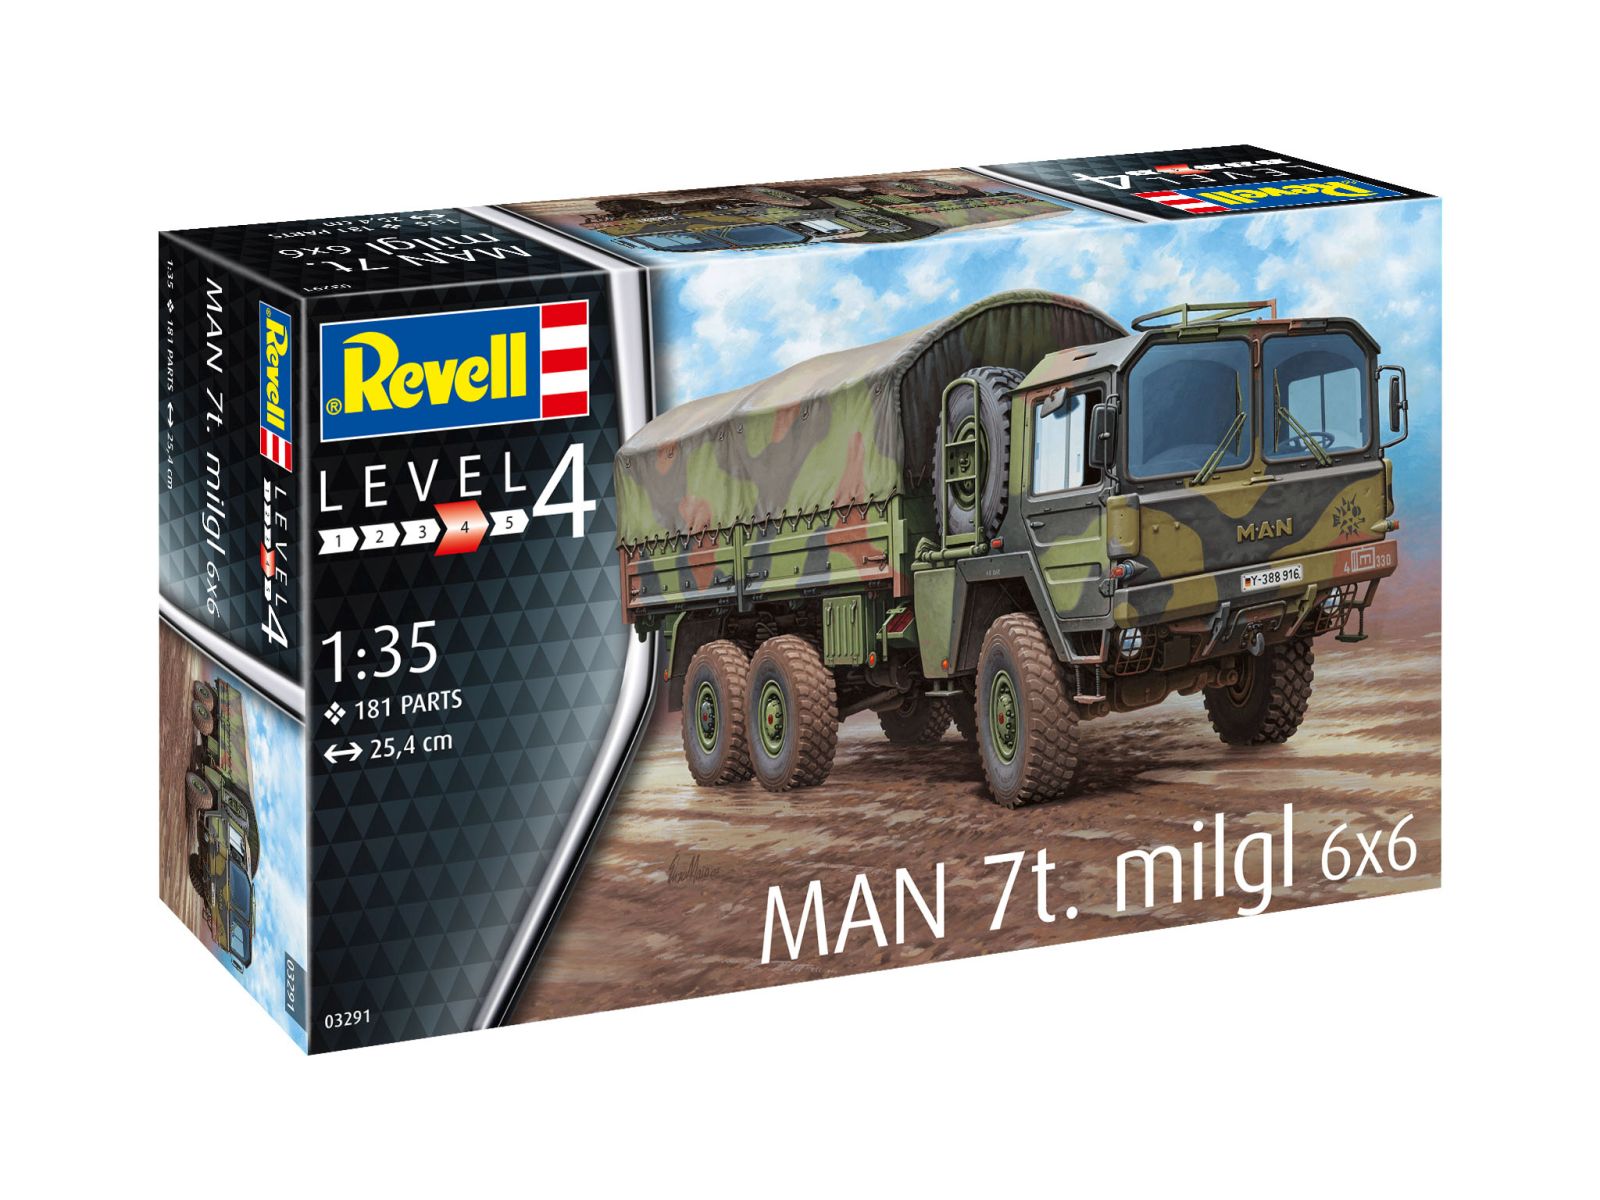 Revell 03291 - MAN 7t milgl 6x6